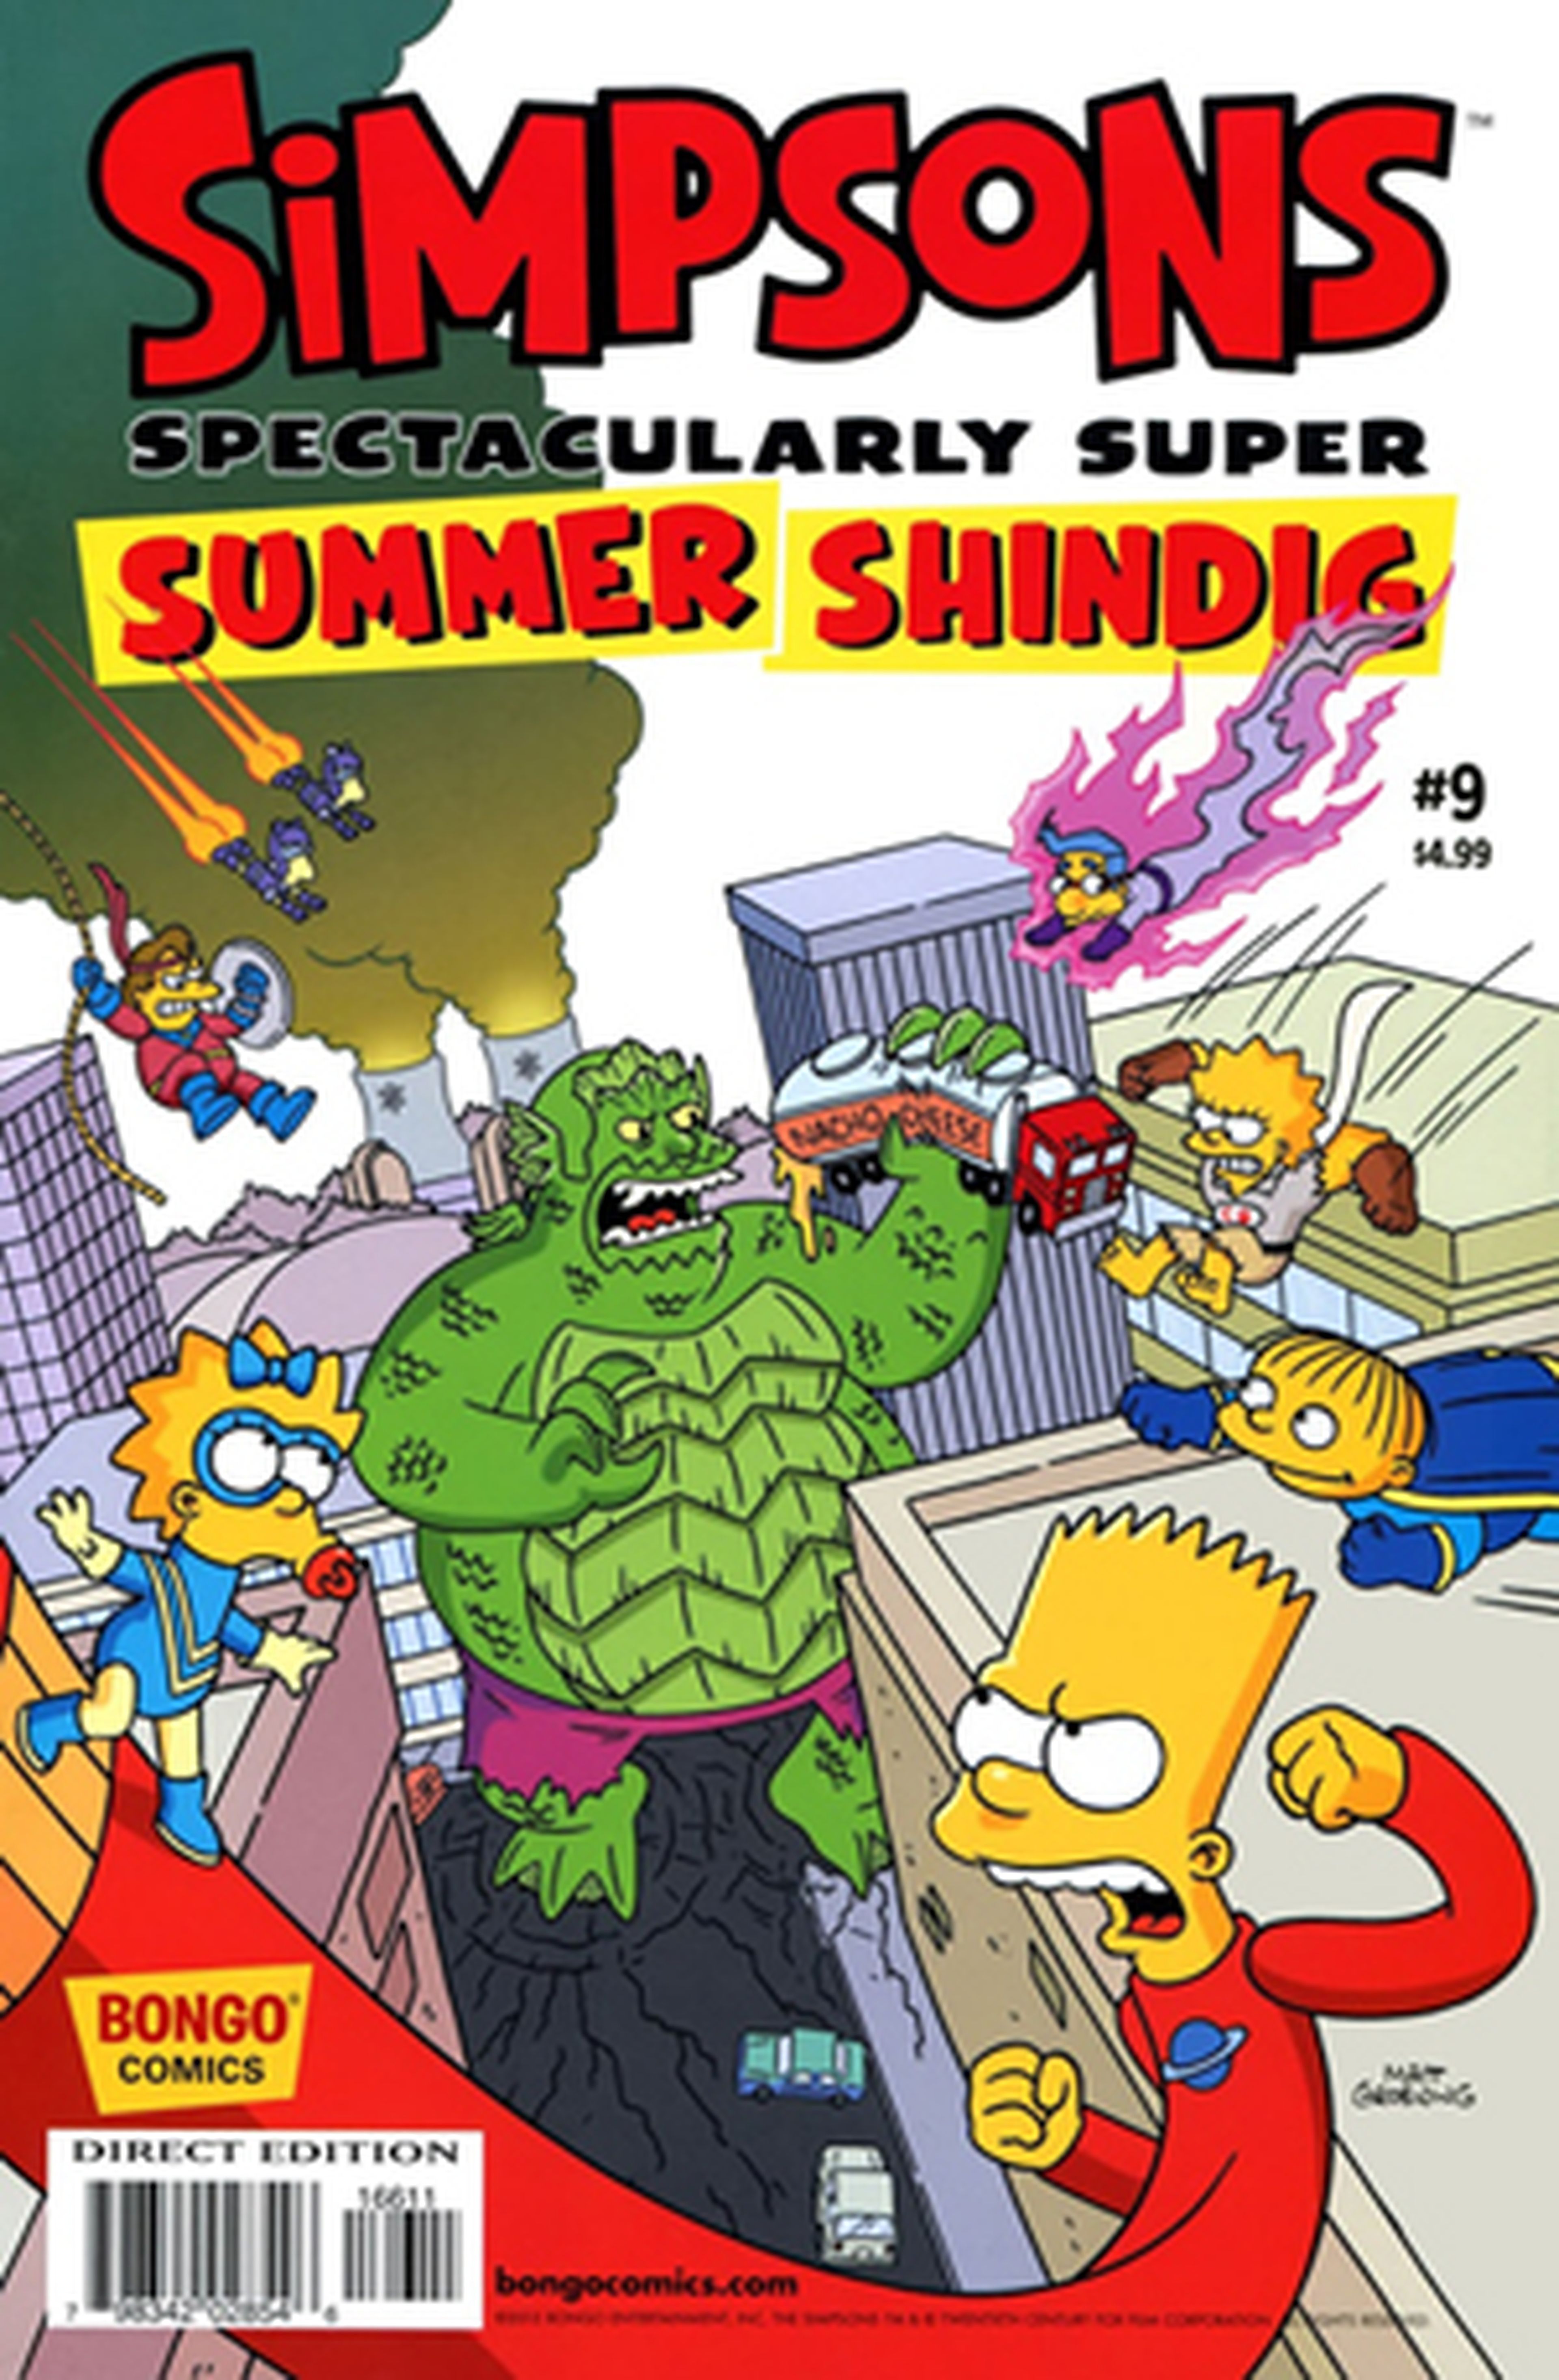 Paella Man, nuevo superhéroe español de Los Simpson